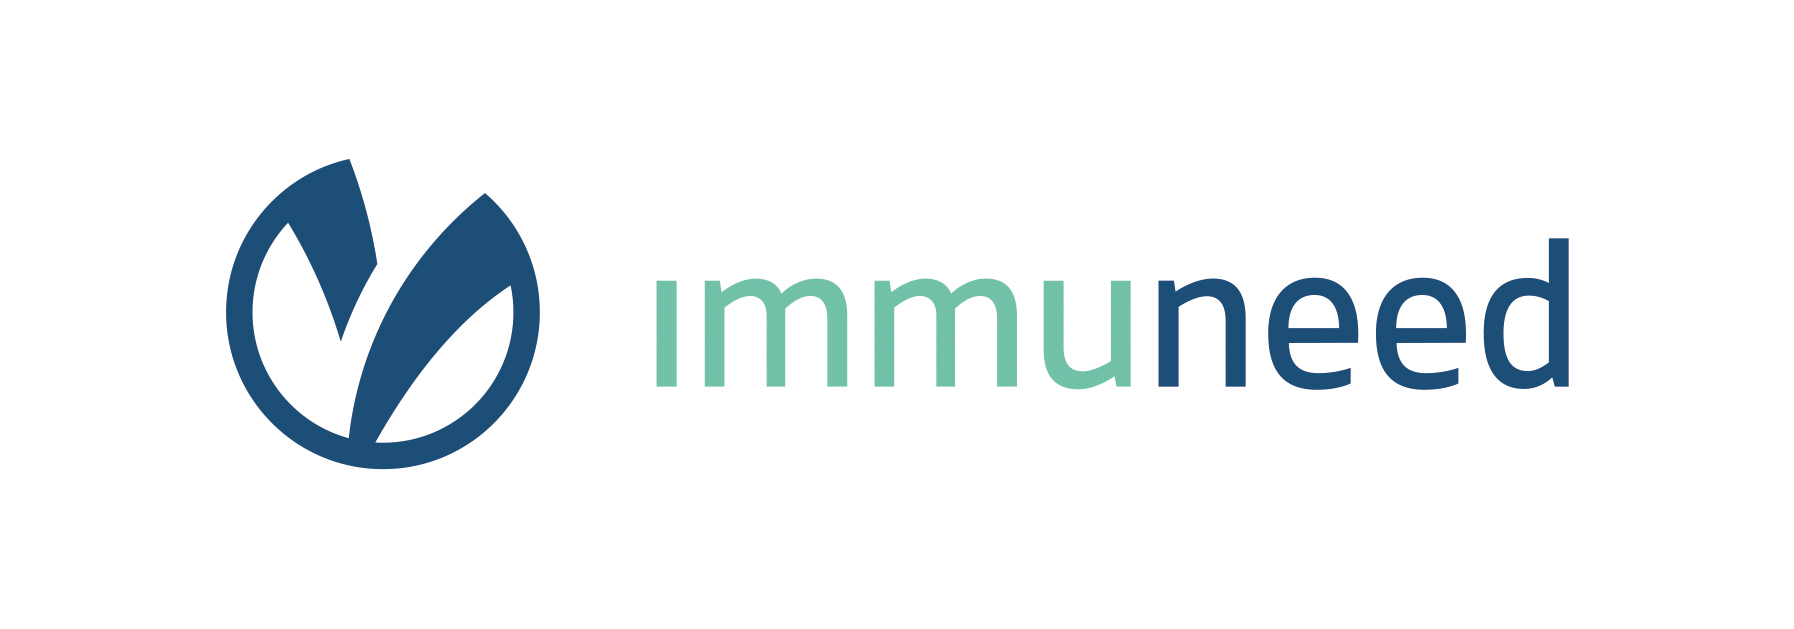 Immuneed